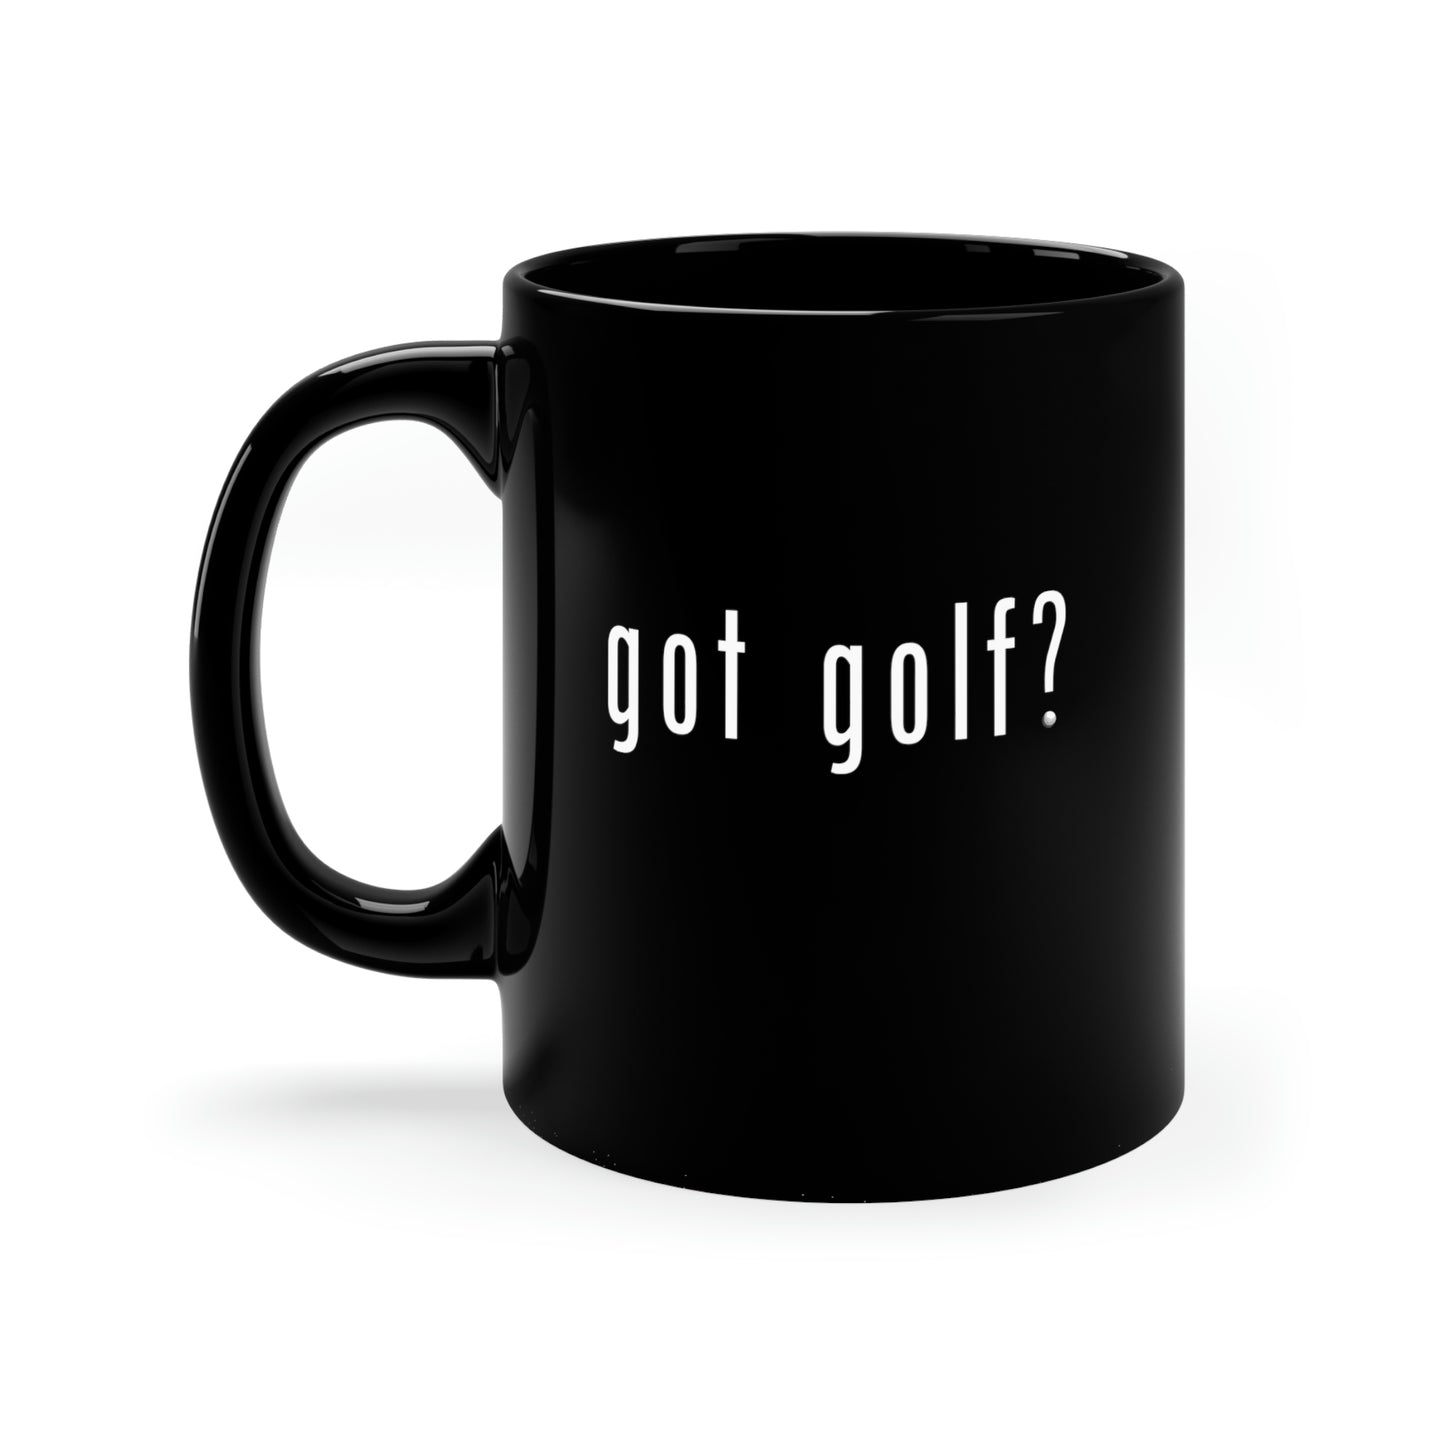 Got Golf? Everyone needs a little golf in their life!